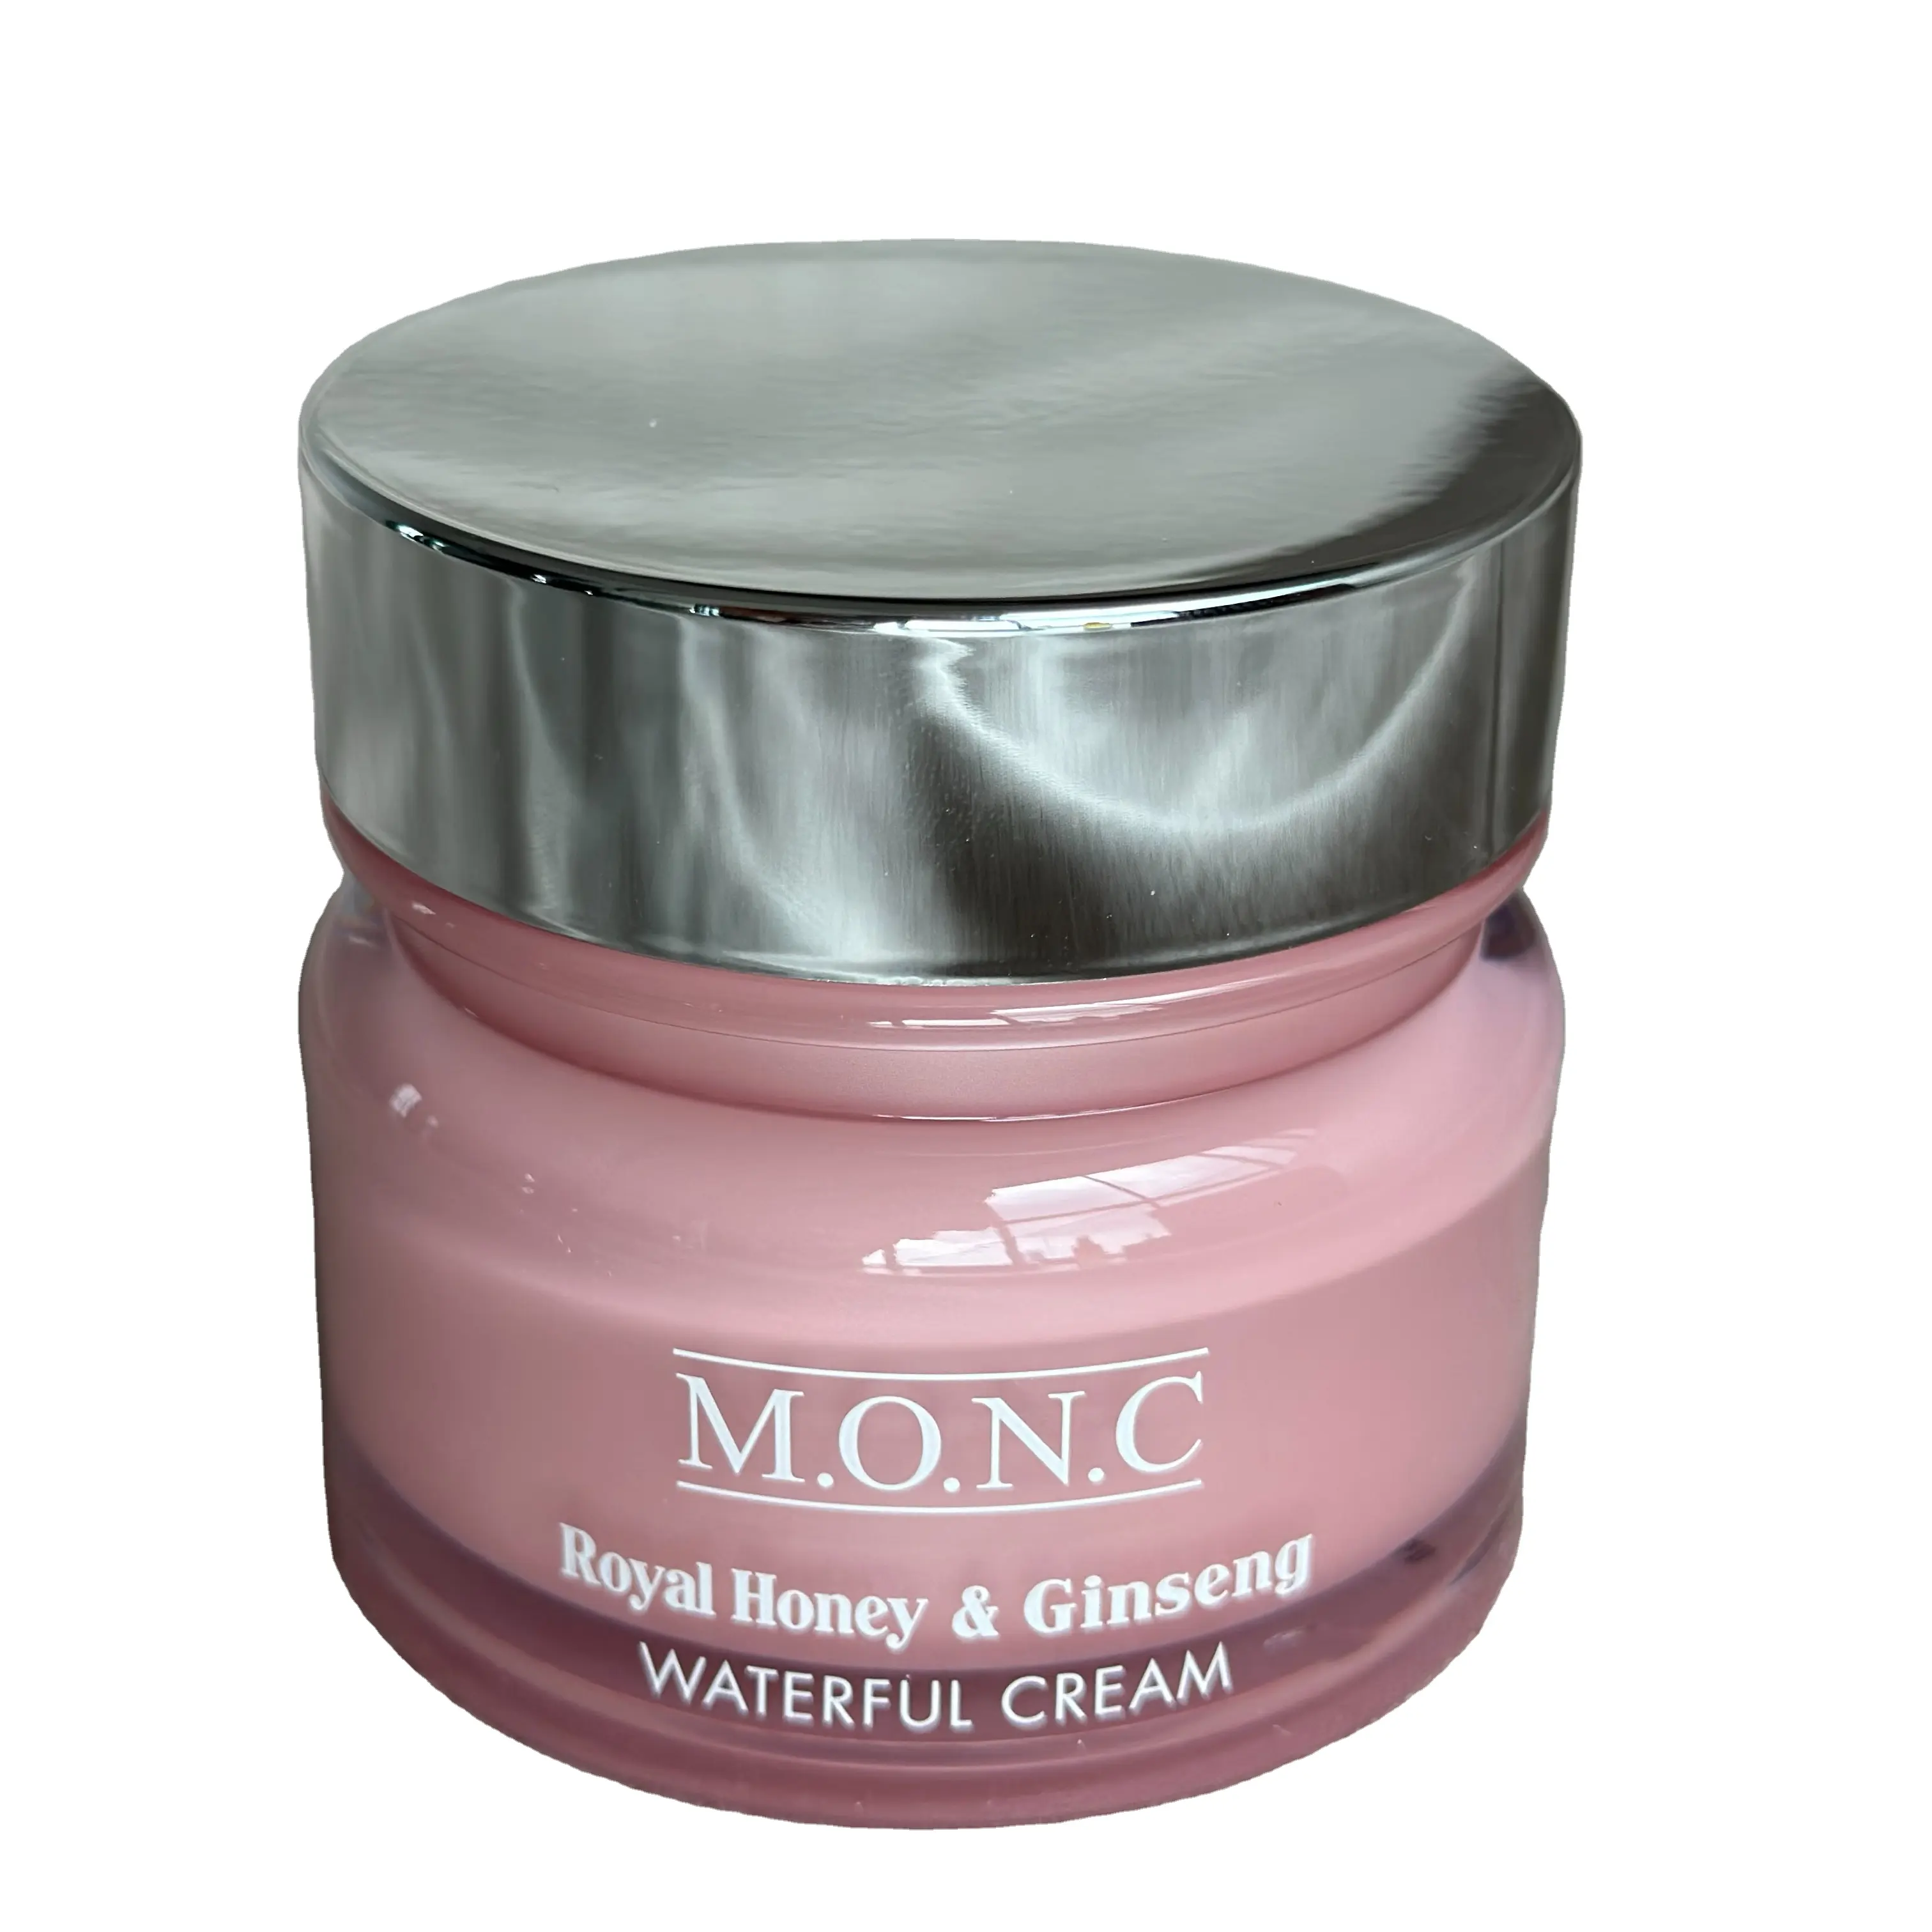 M.O.N.C Royal Honey & Ginseng cachoeira creme cremes faciais allskin tipo umidade hidrolisada elastina fornece extrato de raiz refrescar